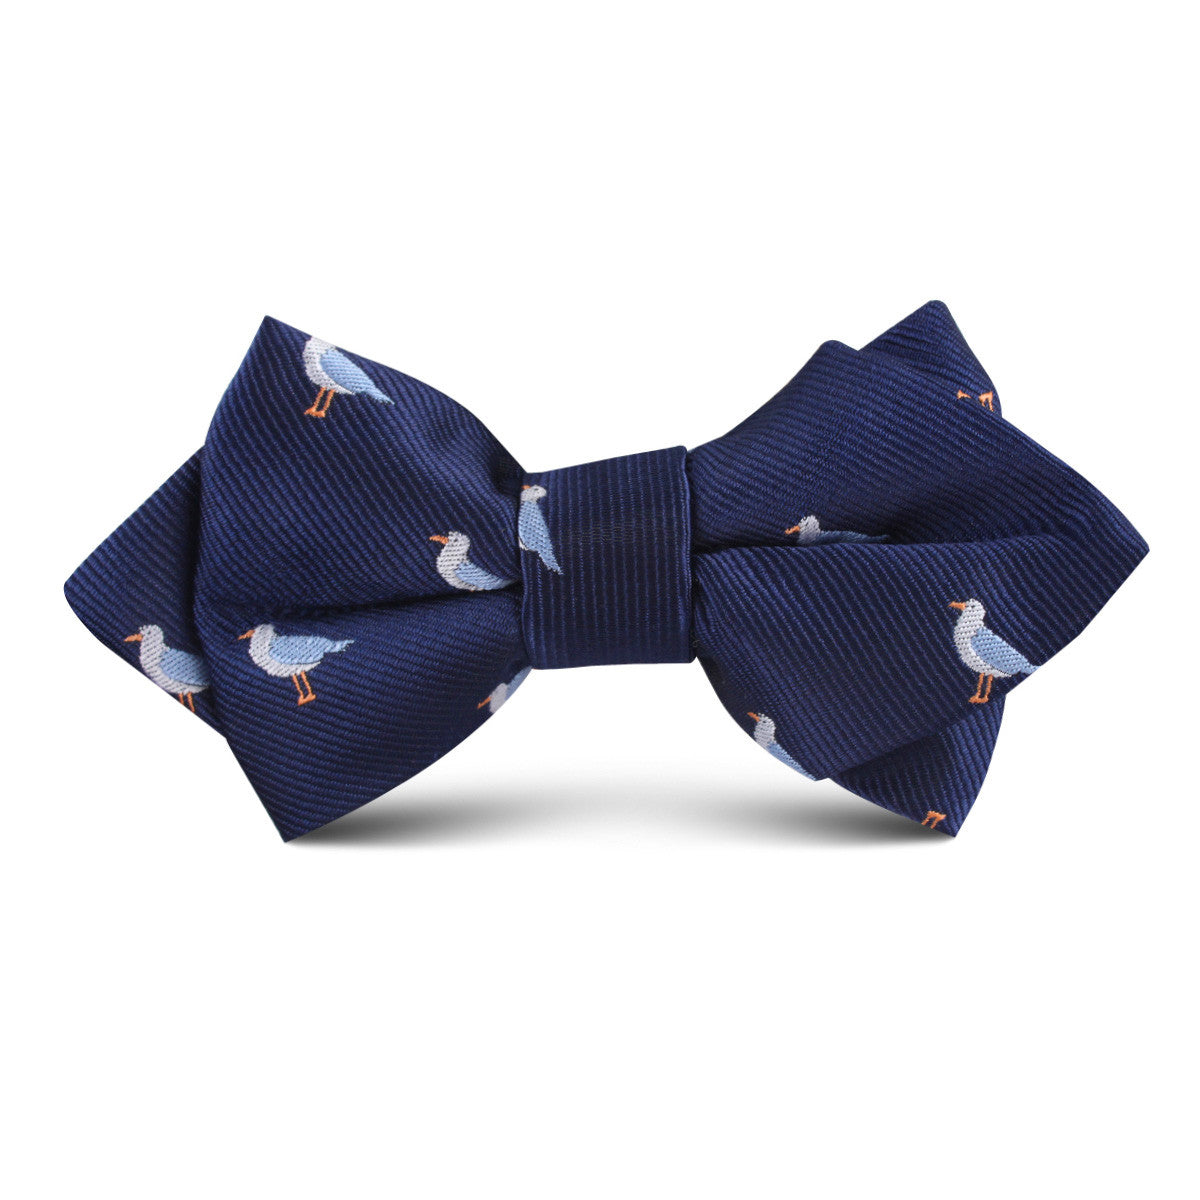 Seagull Bird Kids Diamond Bow Tie